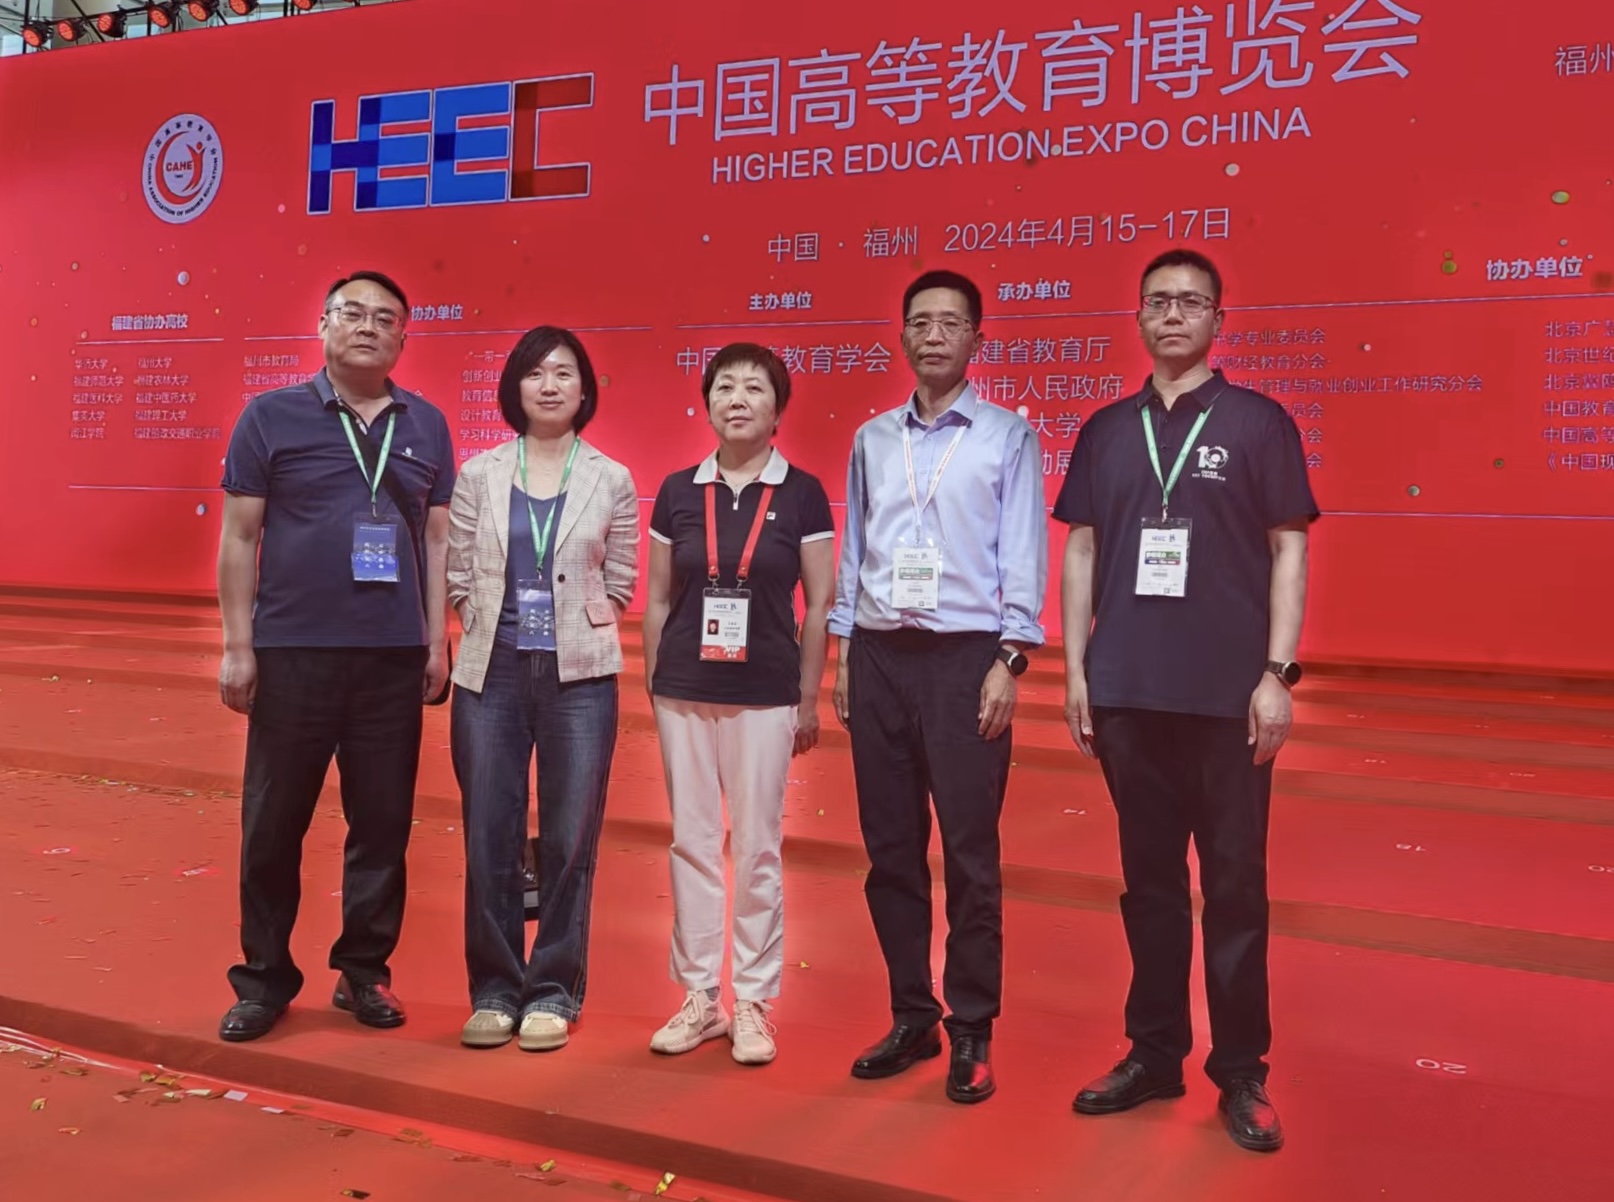 王素云副校长带队参加第61届中国高等教育博览会